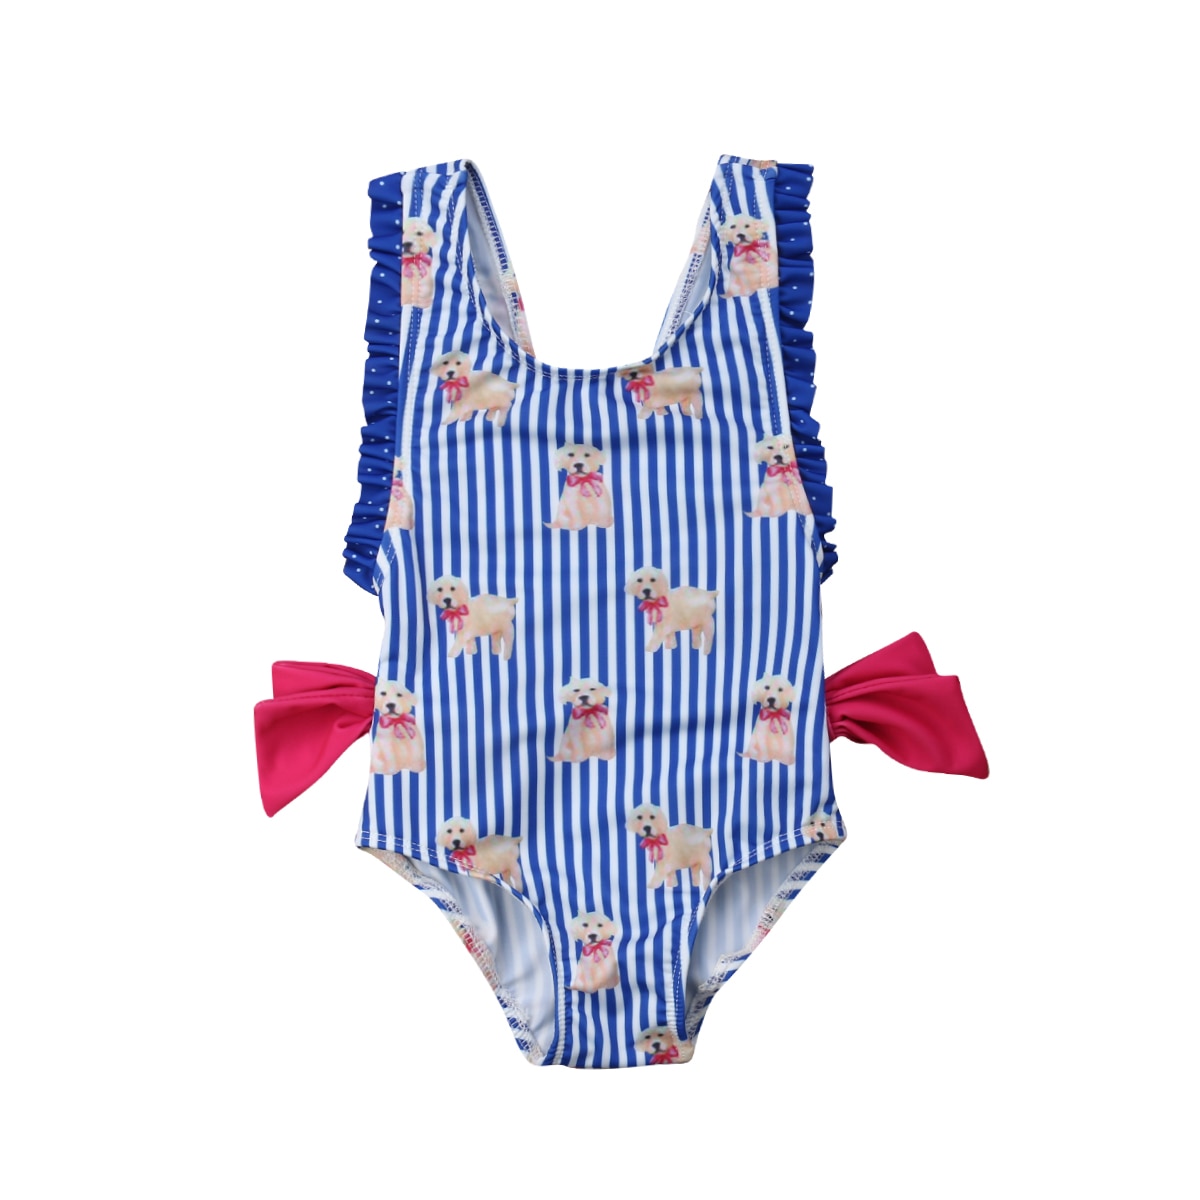 Hirigin sommer småbørn børn baby pige badetøj sød hund+striber bikini badedragt batching dragt strandtøj